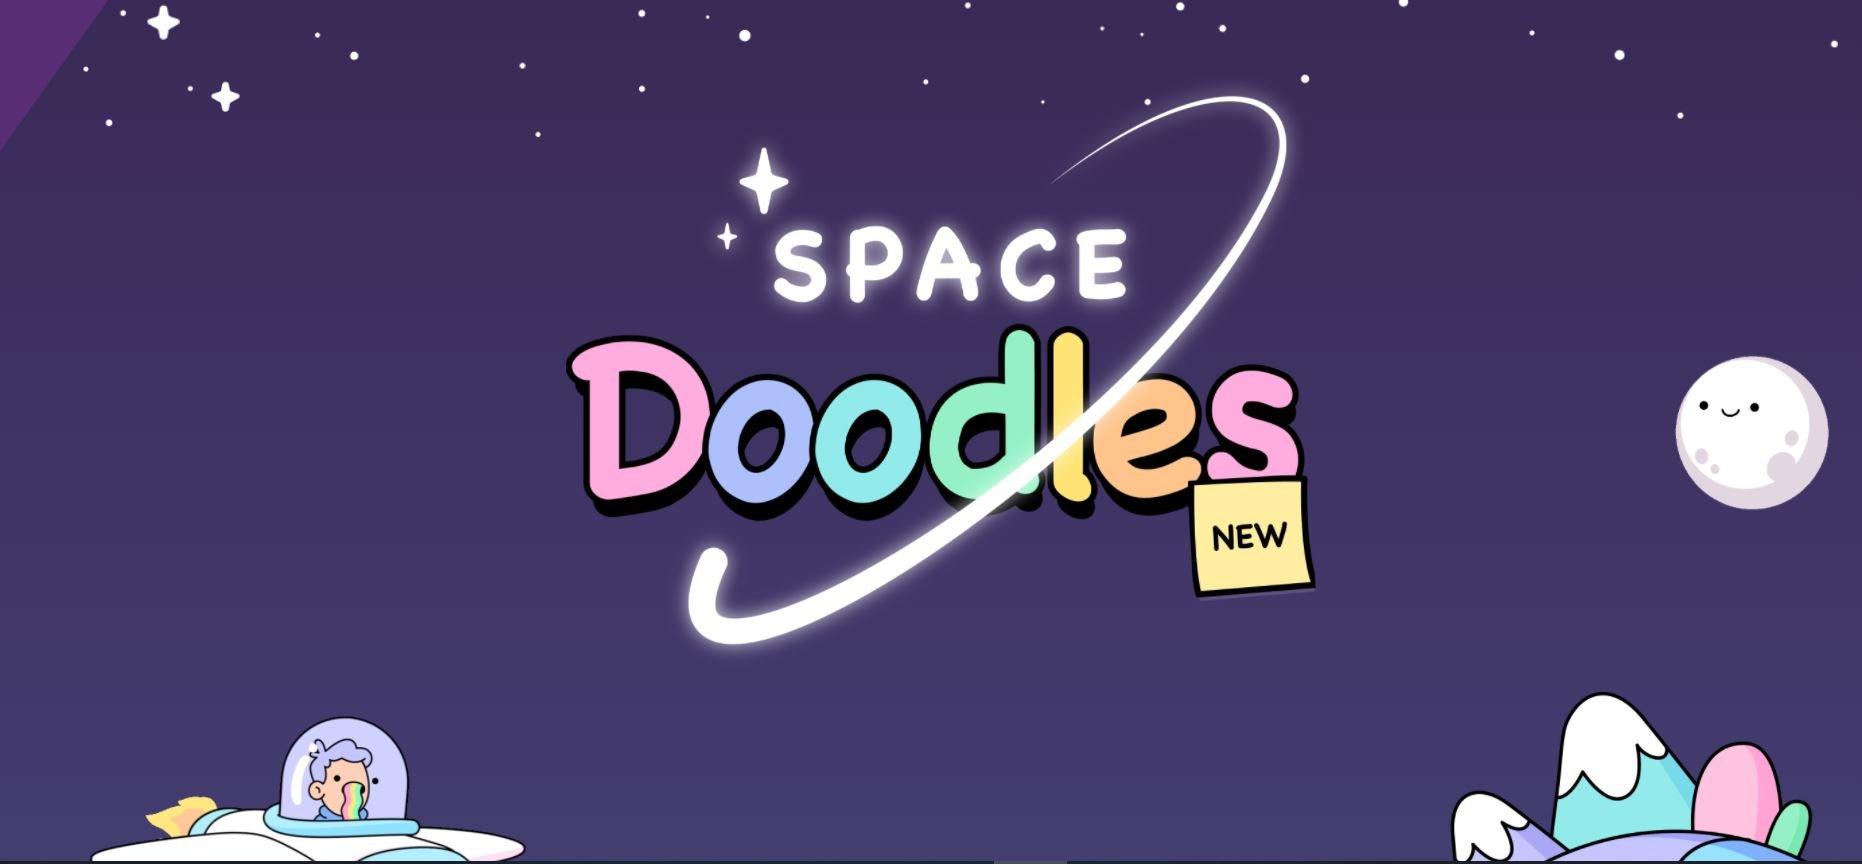 Space doodles logo on official doodles NFT website